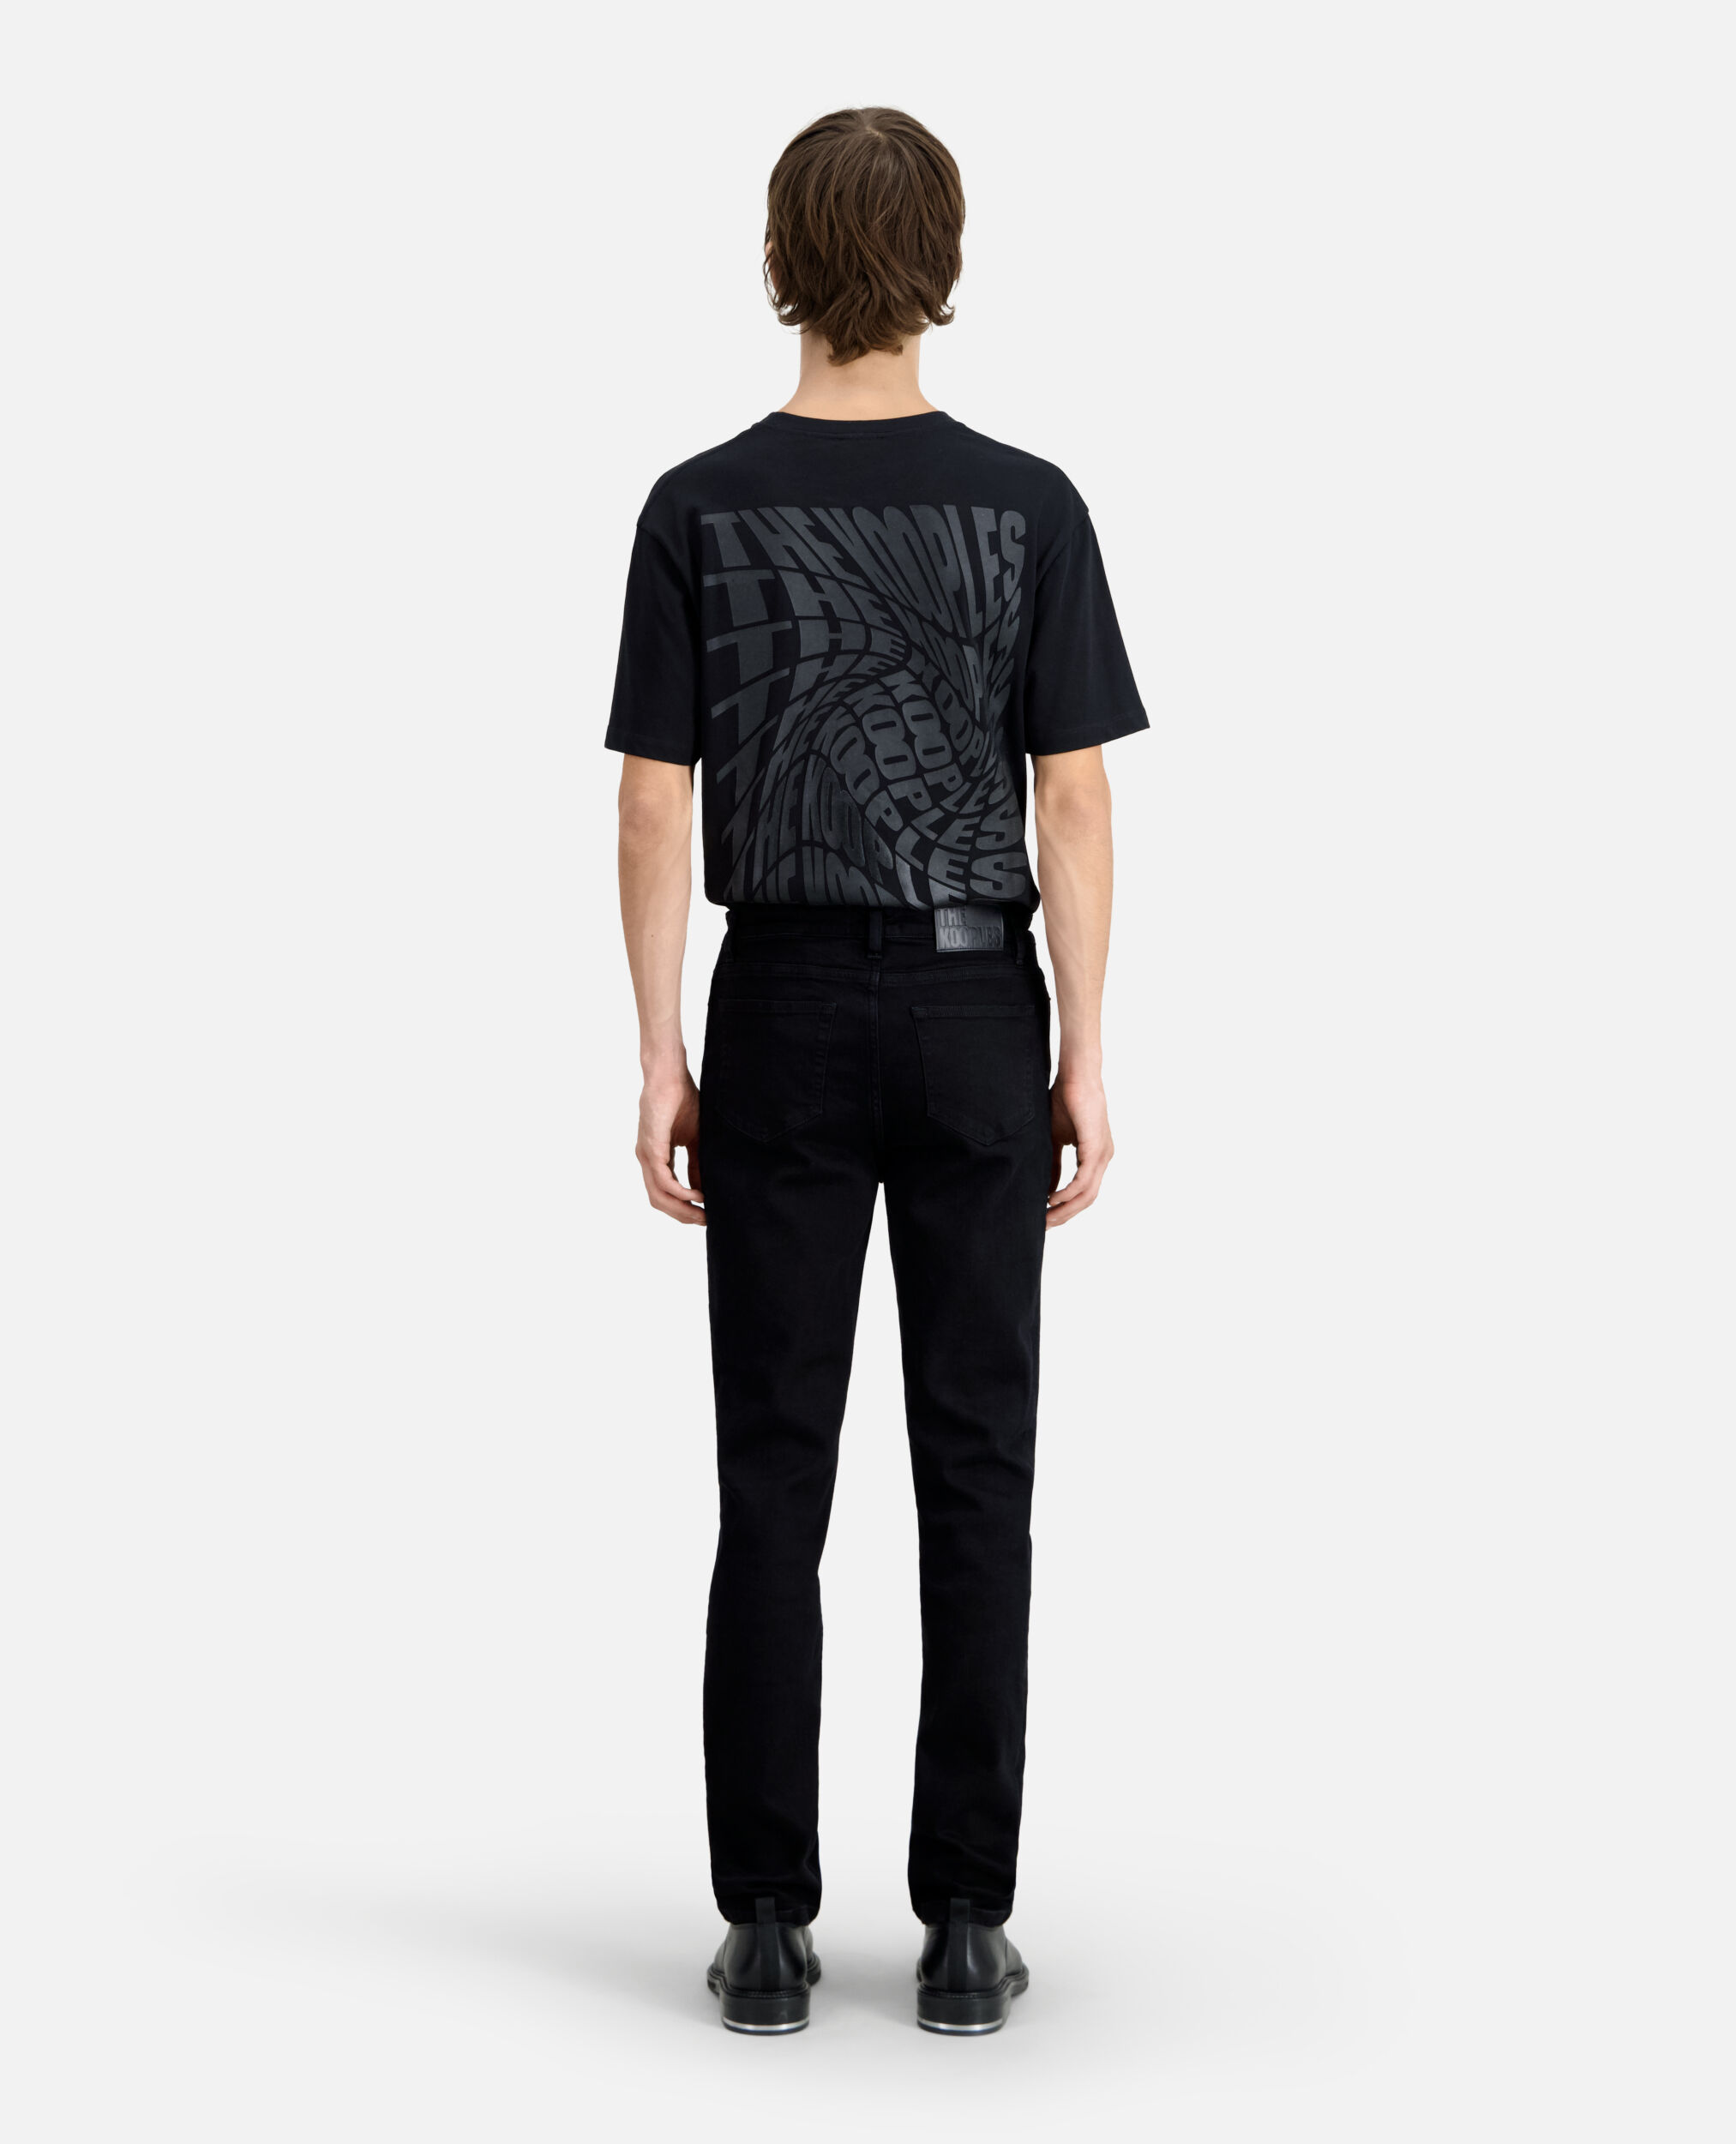 Slim black jeans with leather pocket, BLACK, hi-res image number null